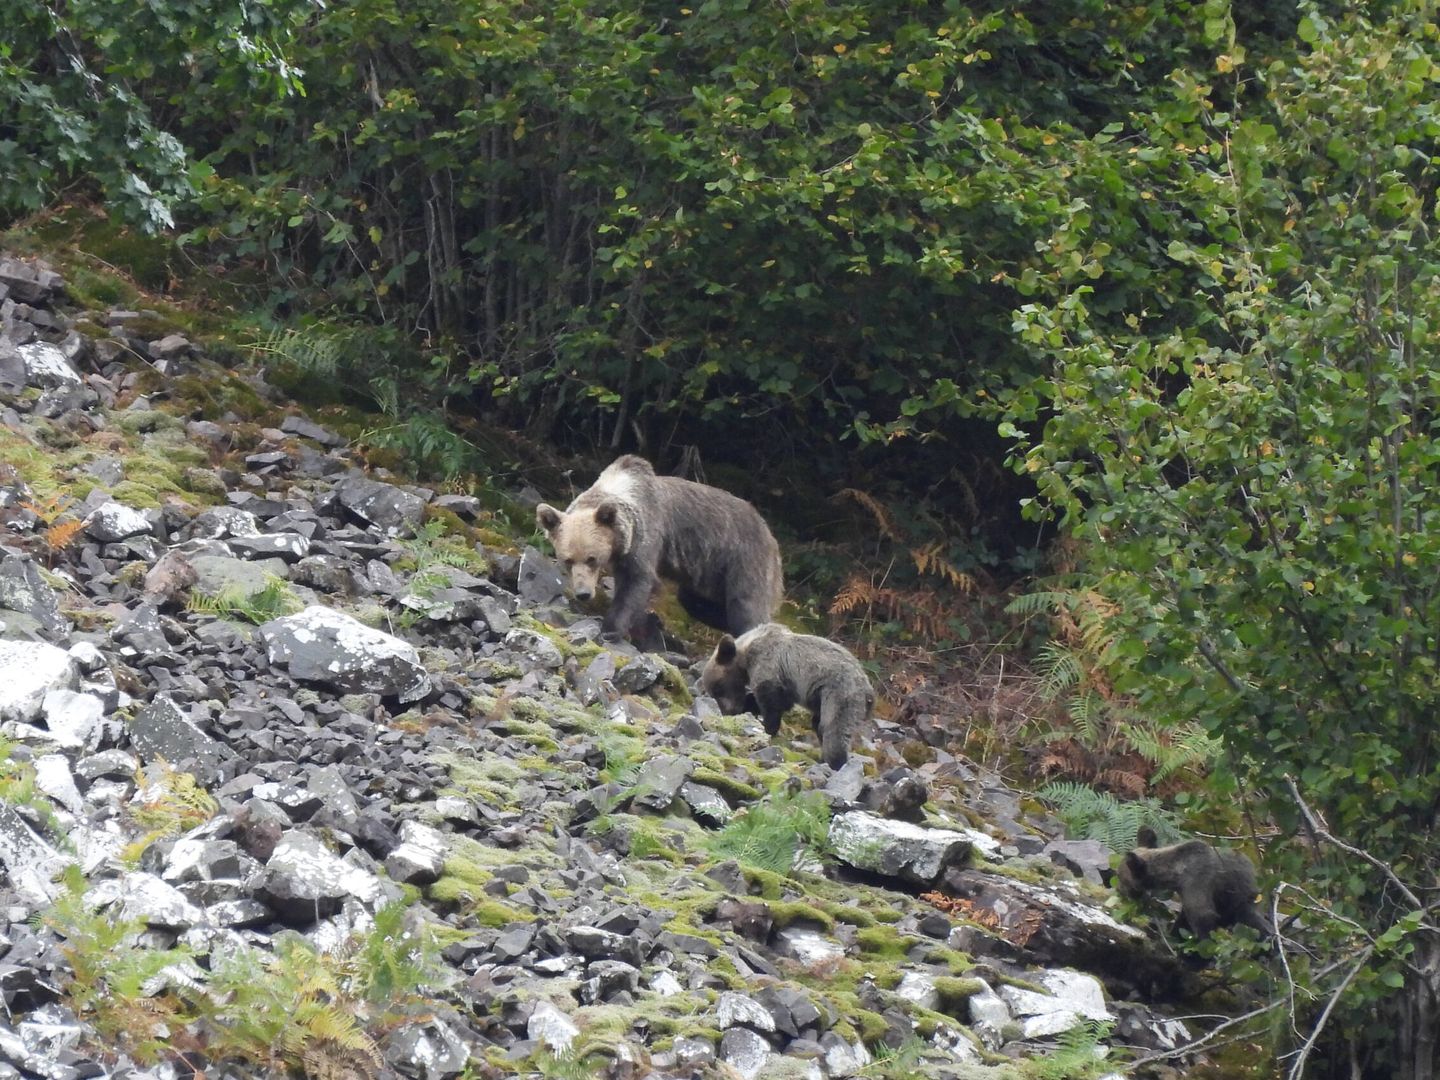 A día de hoy, los conservacionistas siguen encontrando cepos y trampas que ponen en riesgo a los osos. (Alfonso Polvorinos).